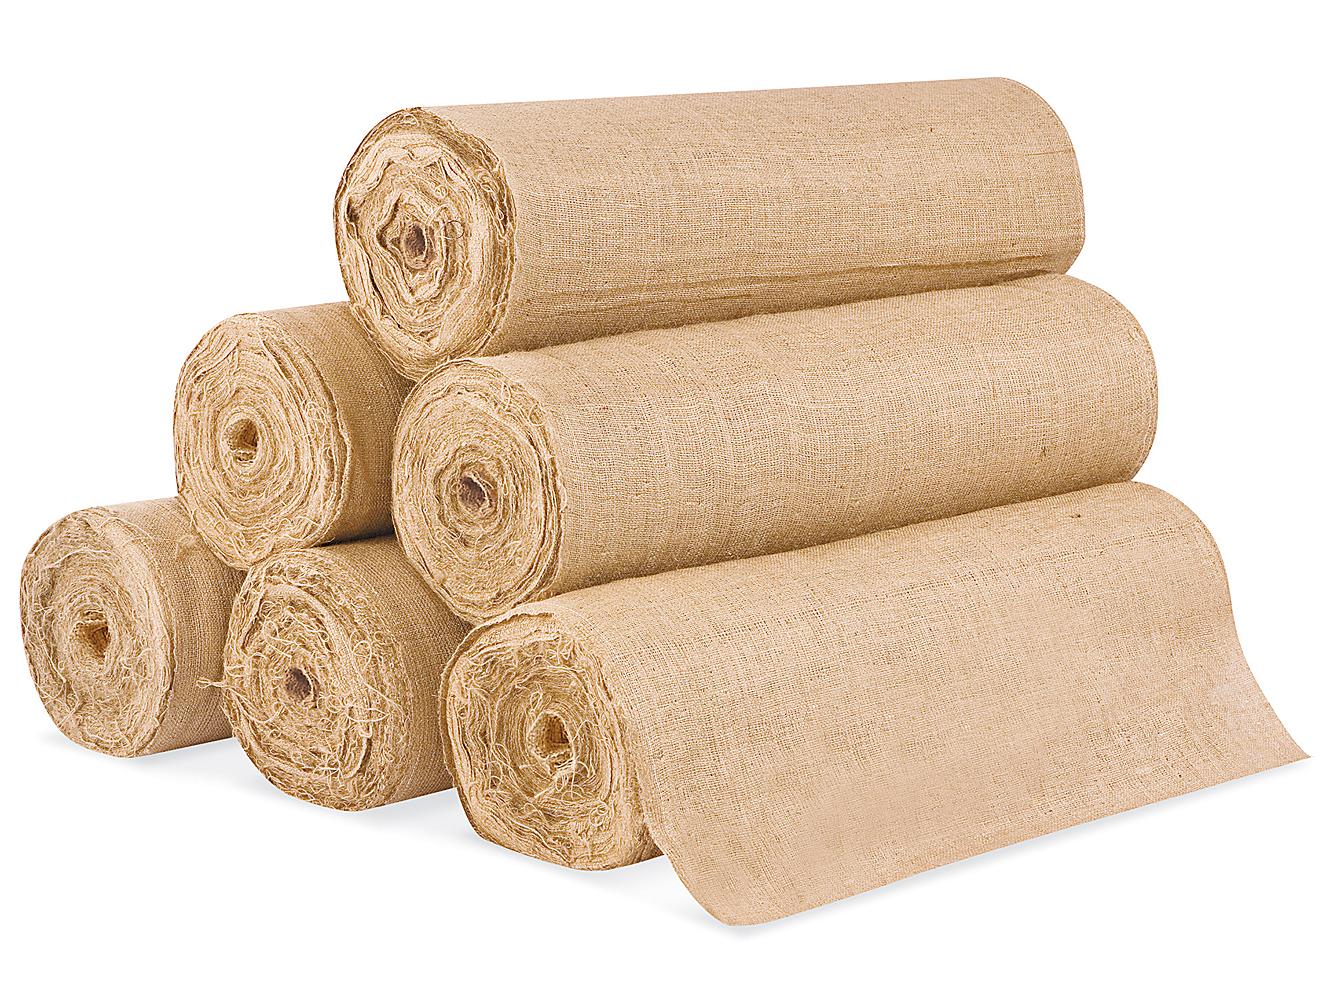 Burlap Fabric Rolls in Stock - ULINE